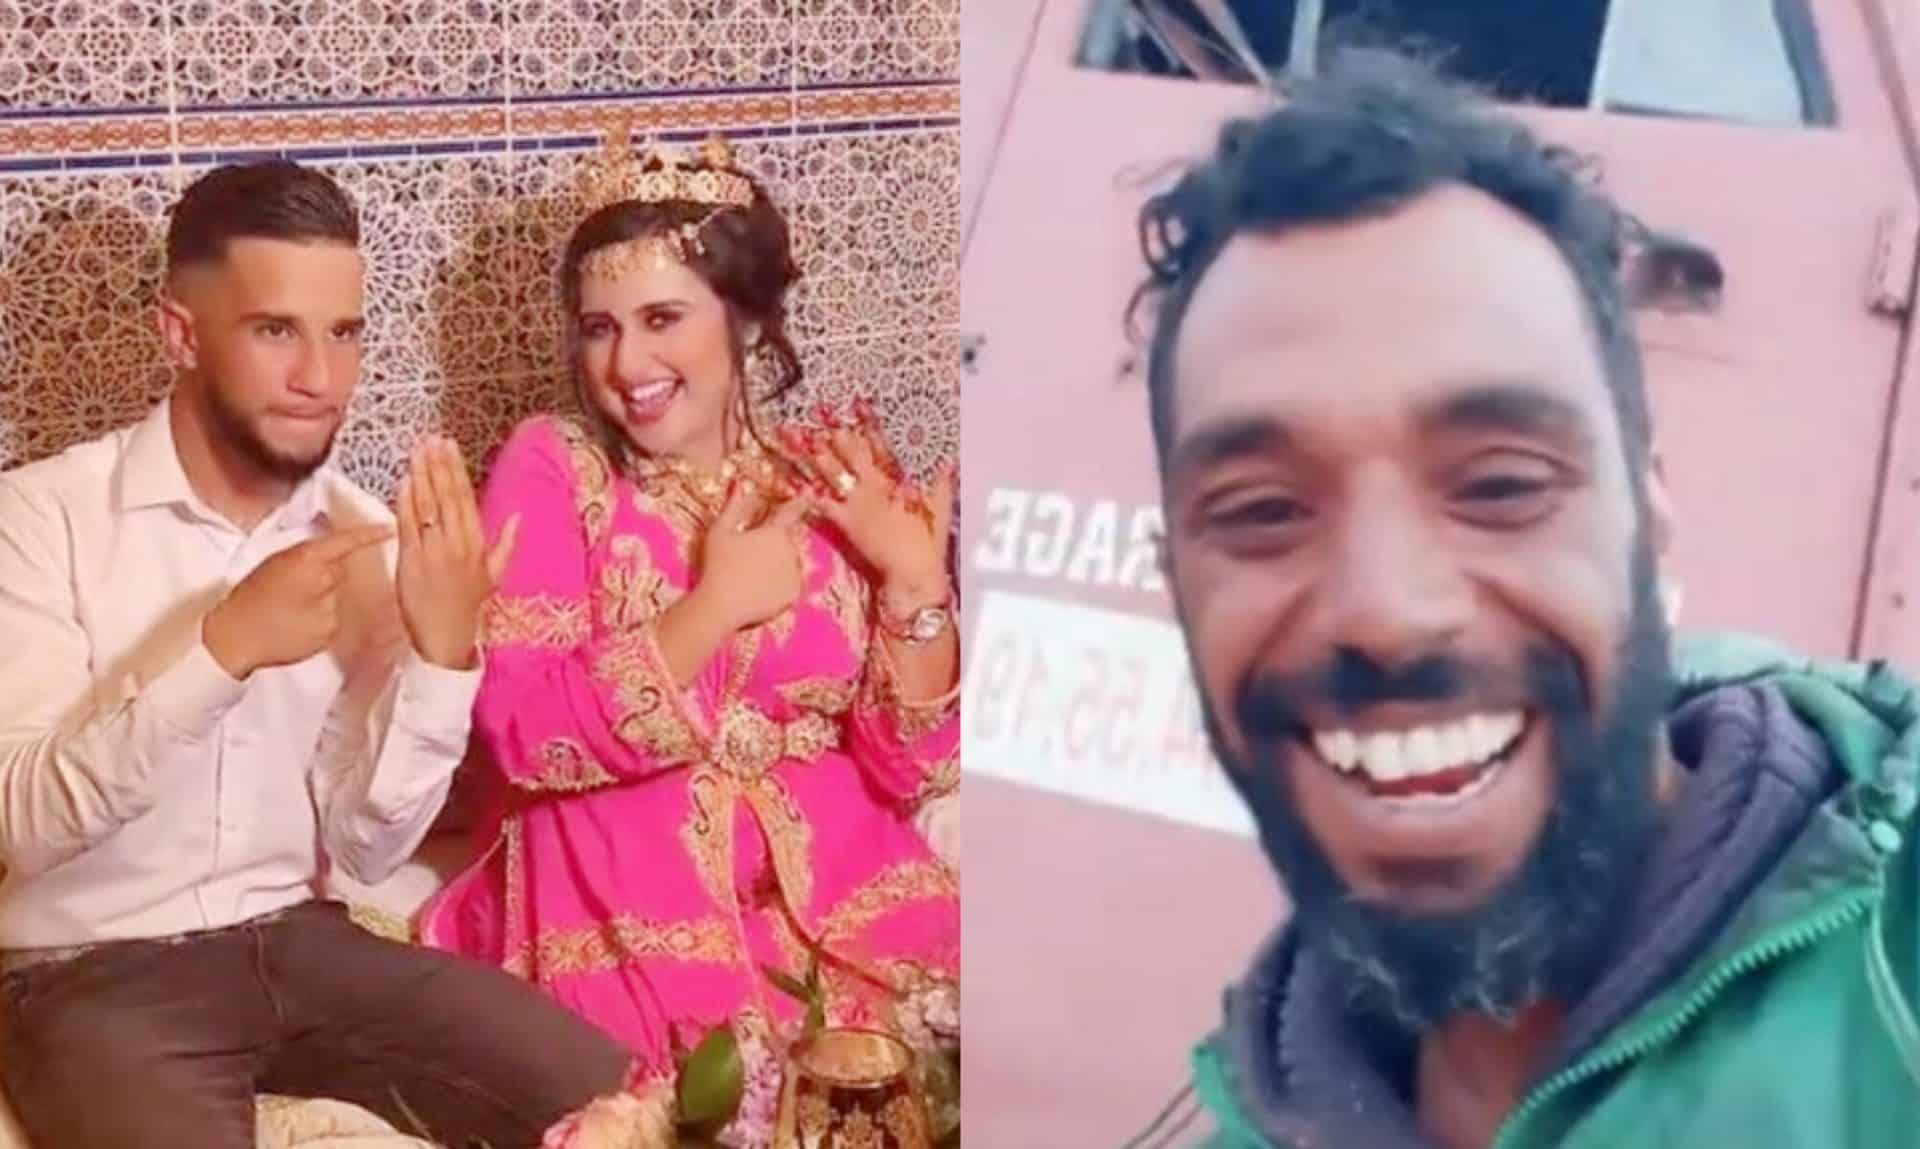 زواج يسرى من ماروكينو حقيقة أم تمثيل؟ جمهور المغرب يتفاعل alarabtrend.com